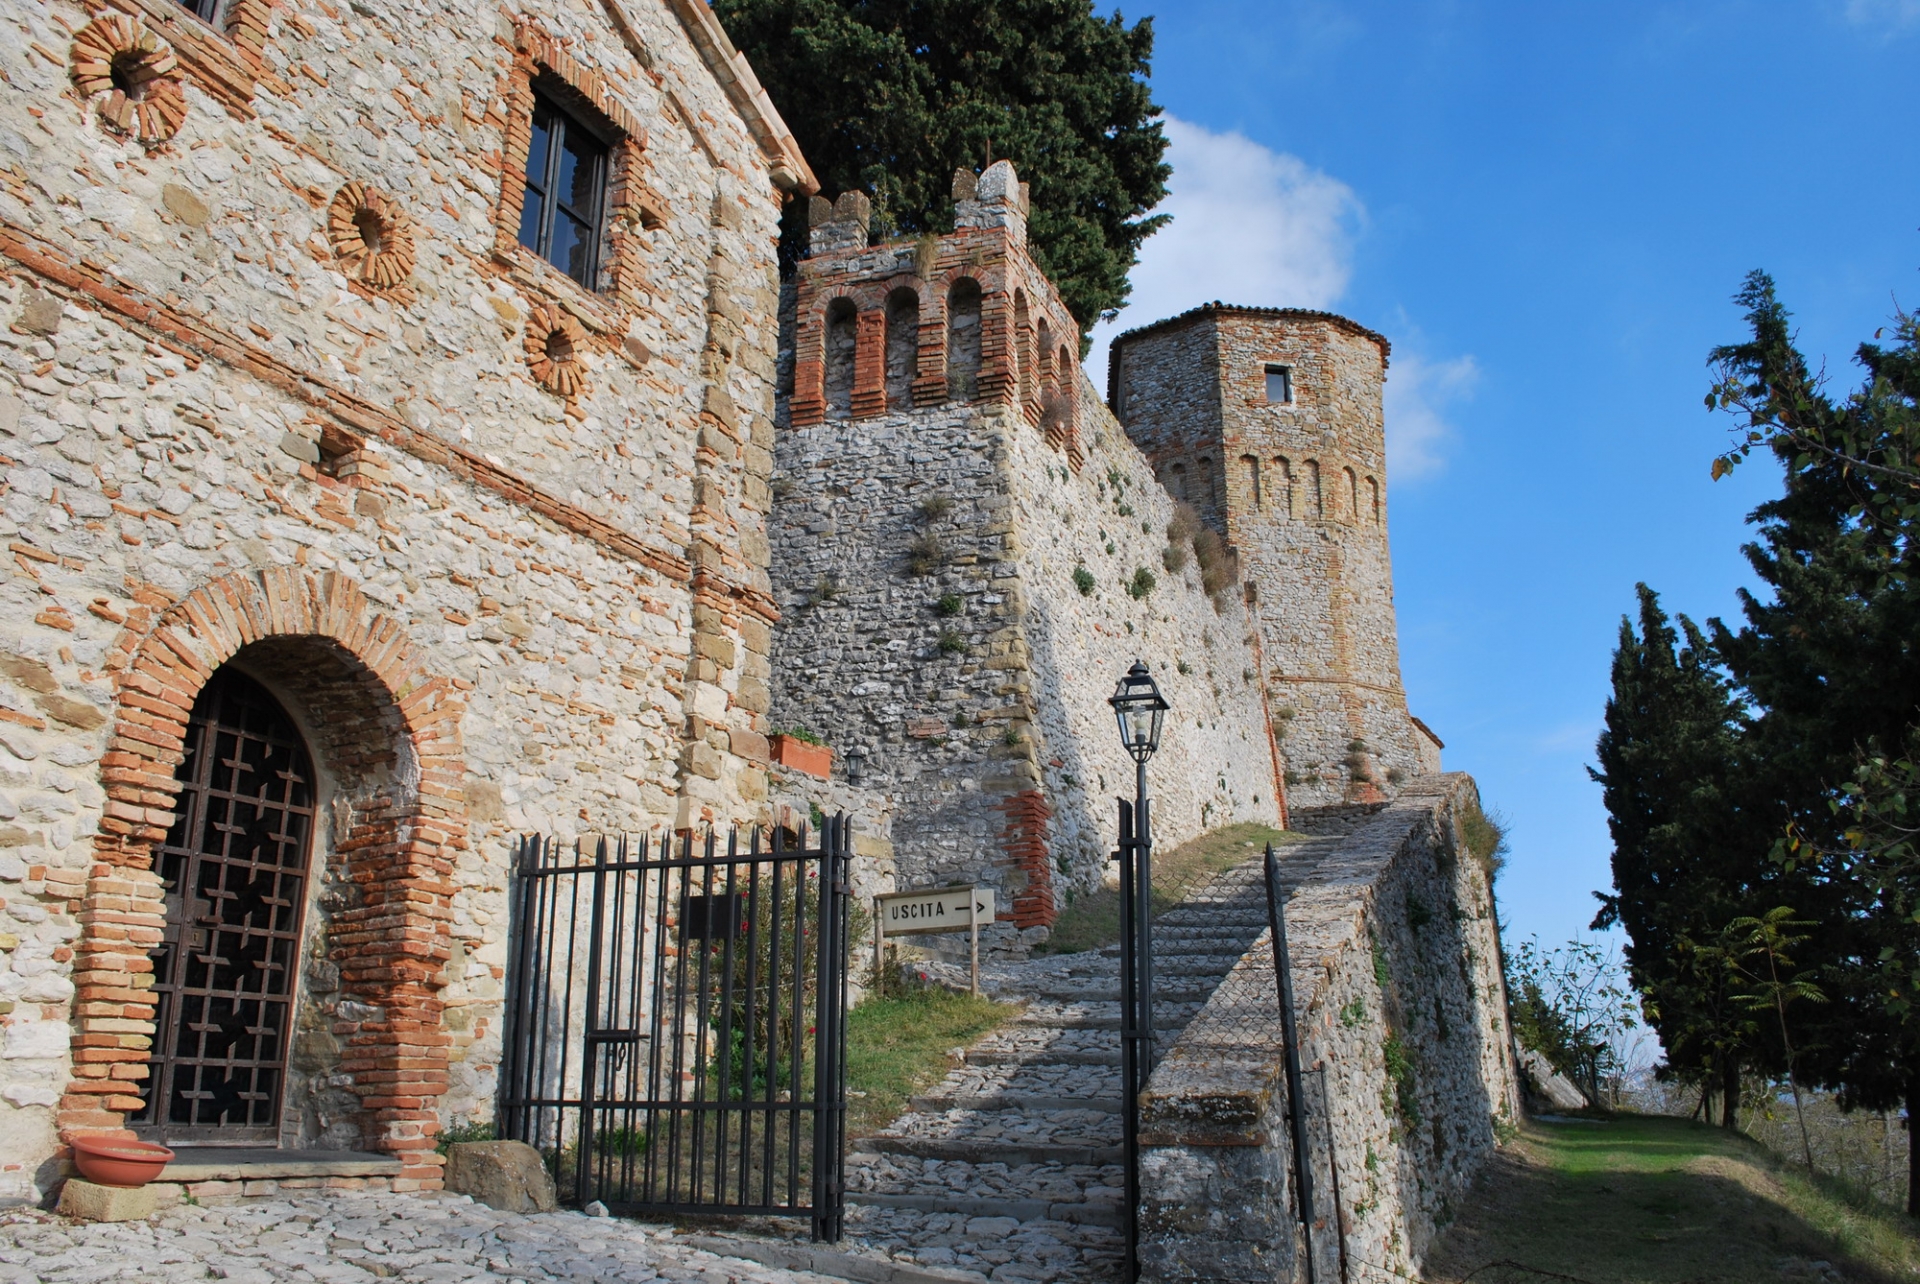 Castello di Montebello photo by Condello Daniela